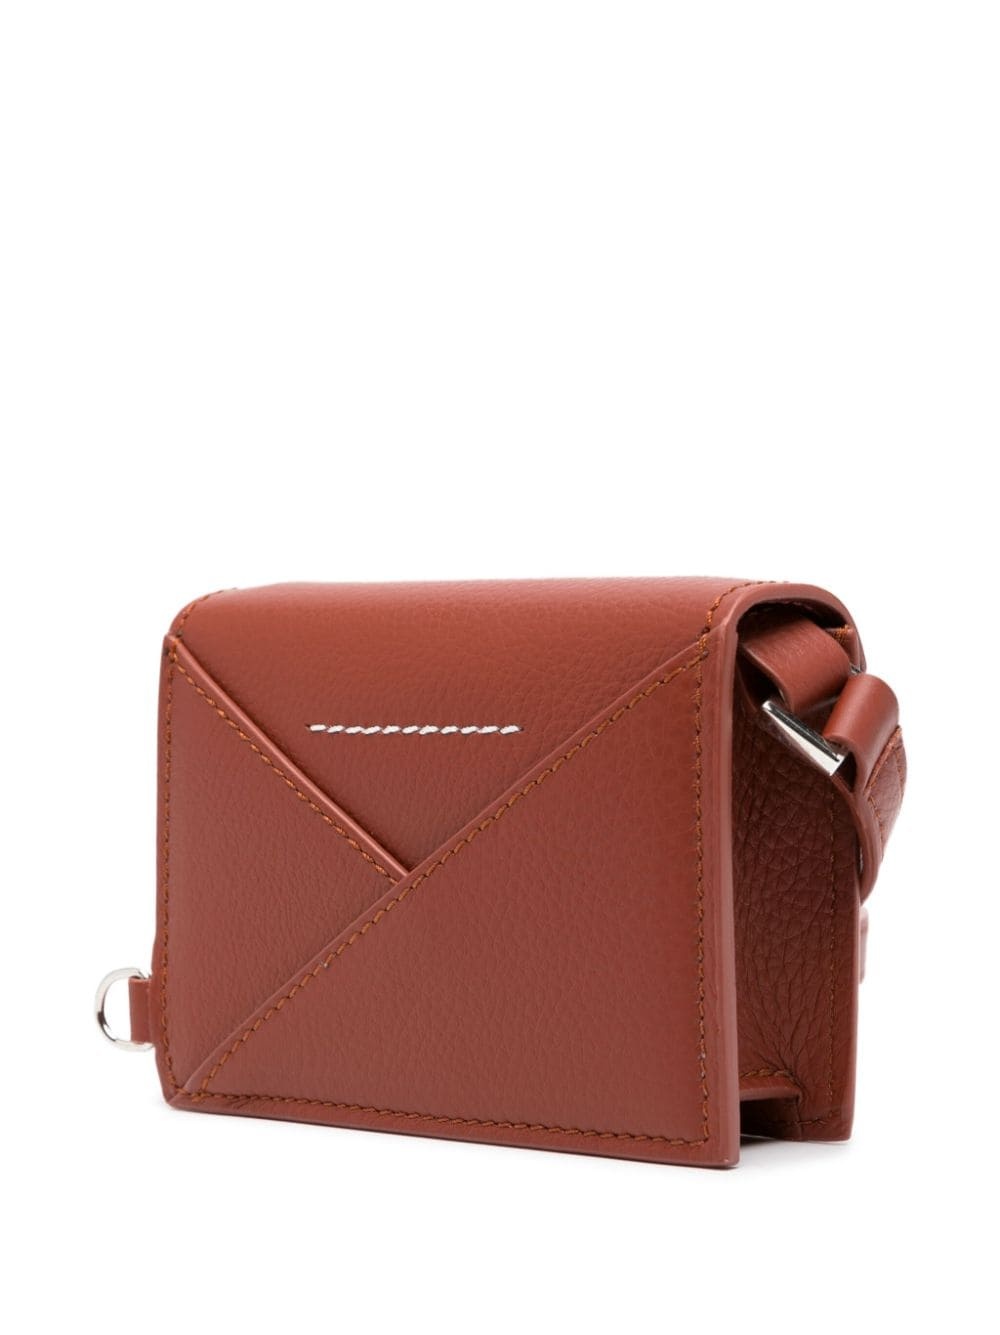 MM6 Maison Margiela Japanese 6 leather mini bag | REVERSIBLE